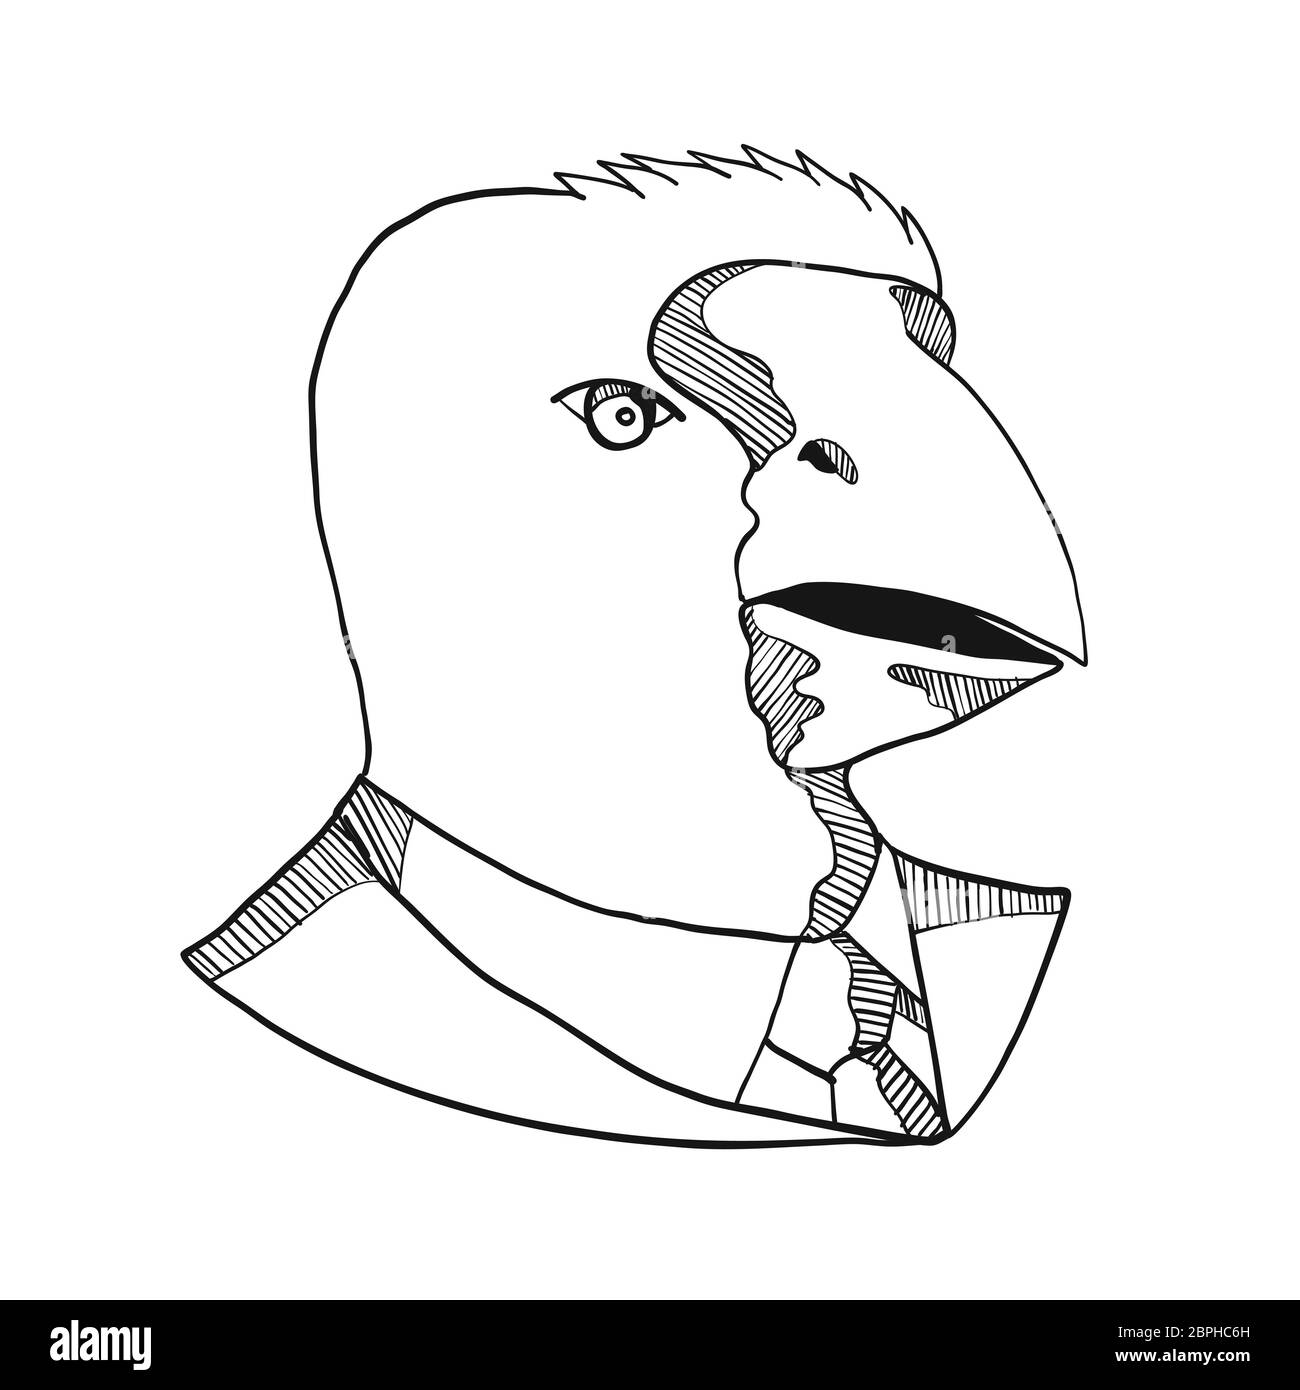 Croquis dessin illustration style de chef d'une Talève takahé, l'île du Sud Talève takahé ou notornis, un oiseau indigène de Nouvelle Zélande, le port d'un bus Banque D'Images